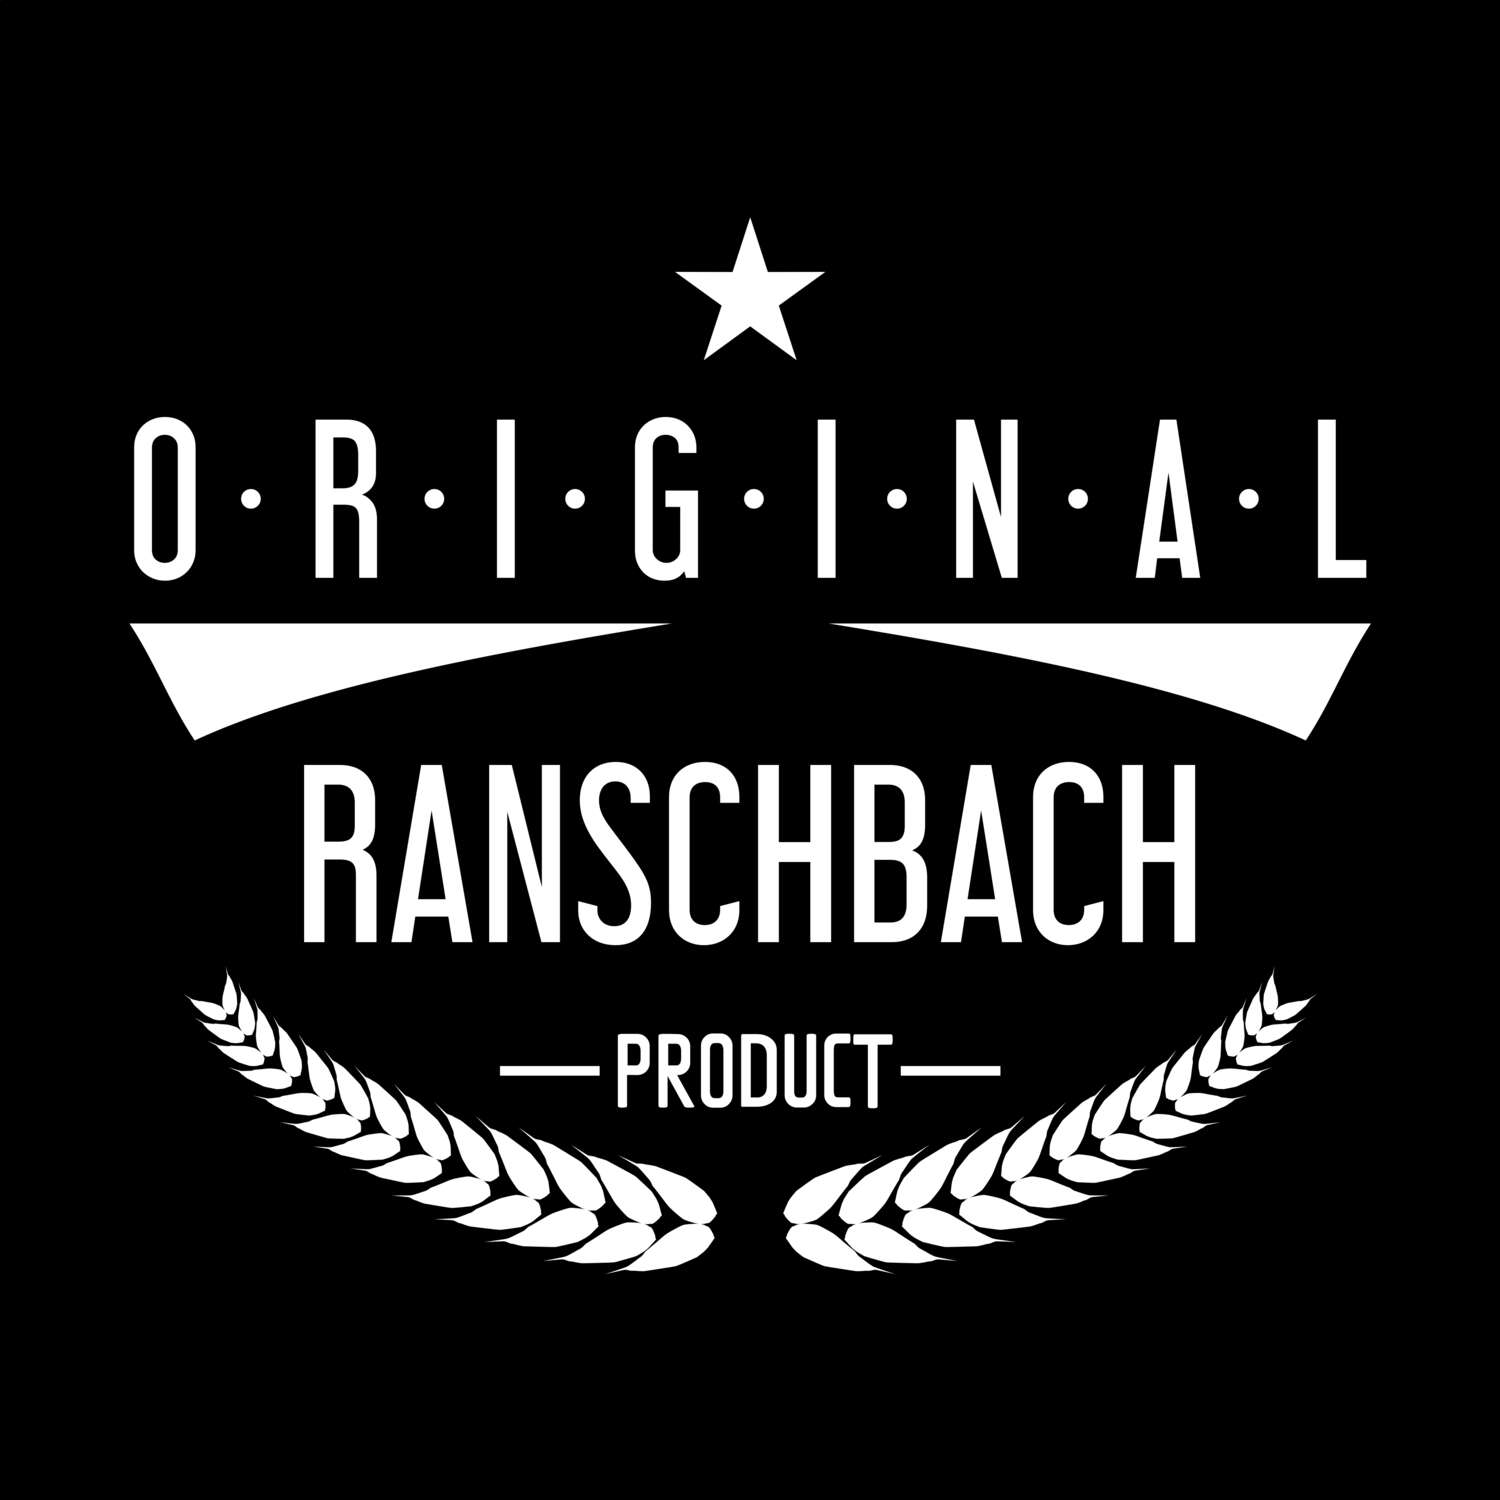 Ranschbach T-Shirt »Original Product«